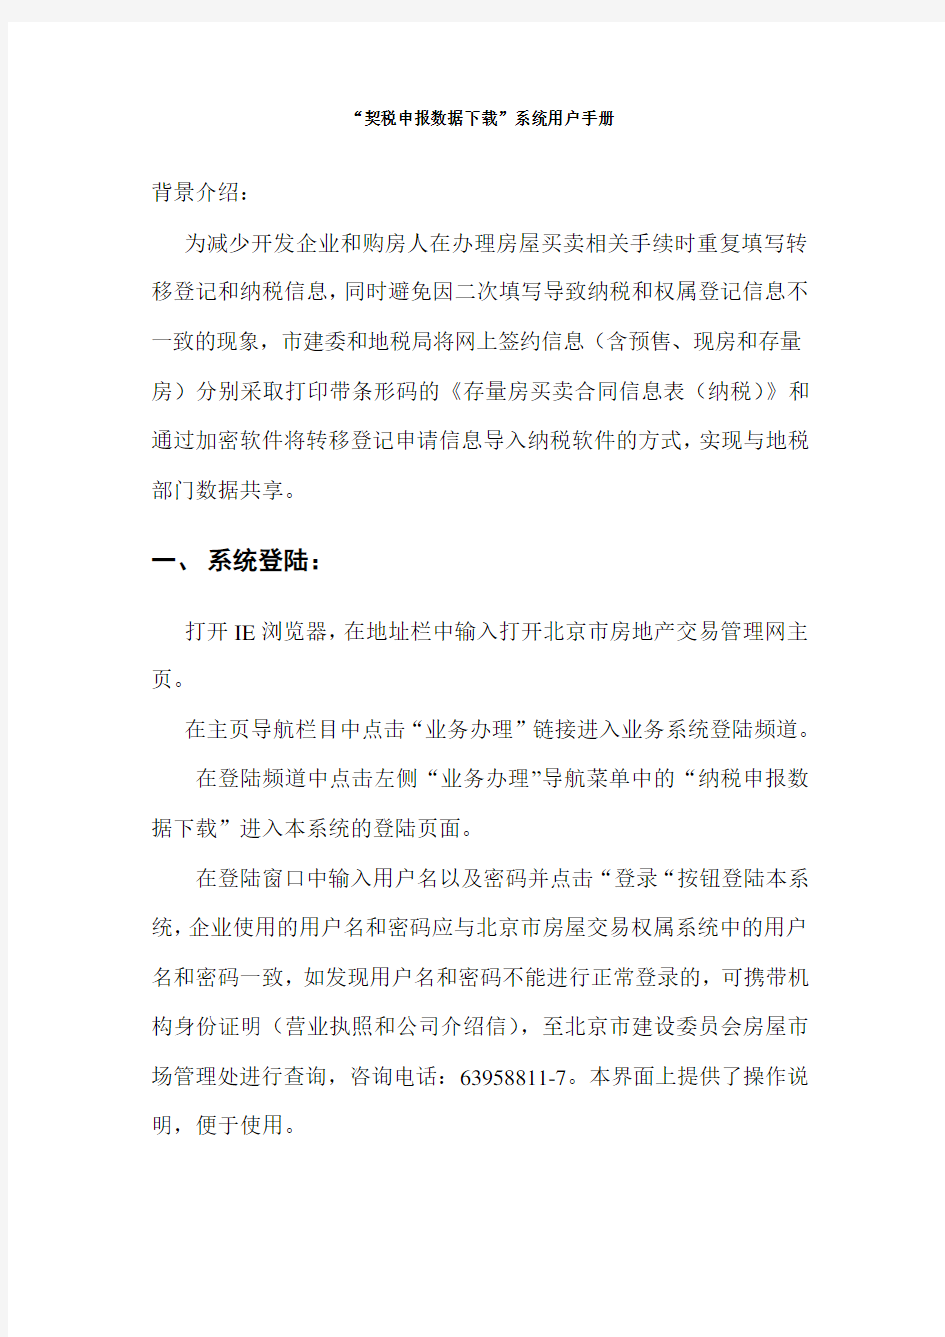 契税申报数据系统用户手册北京市房地产交易管理网